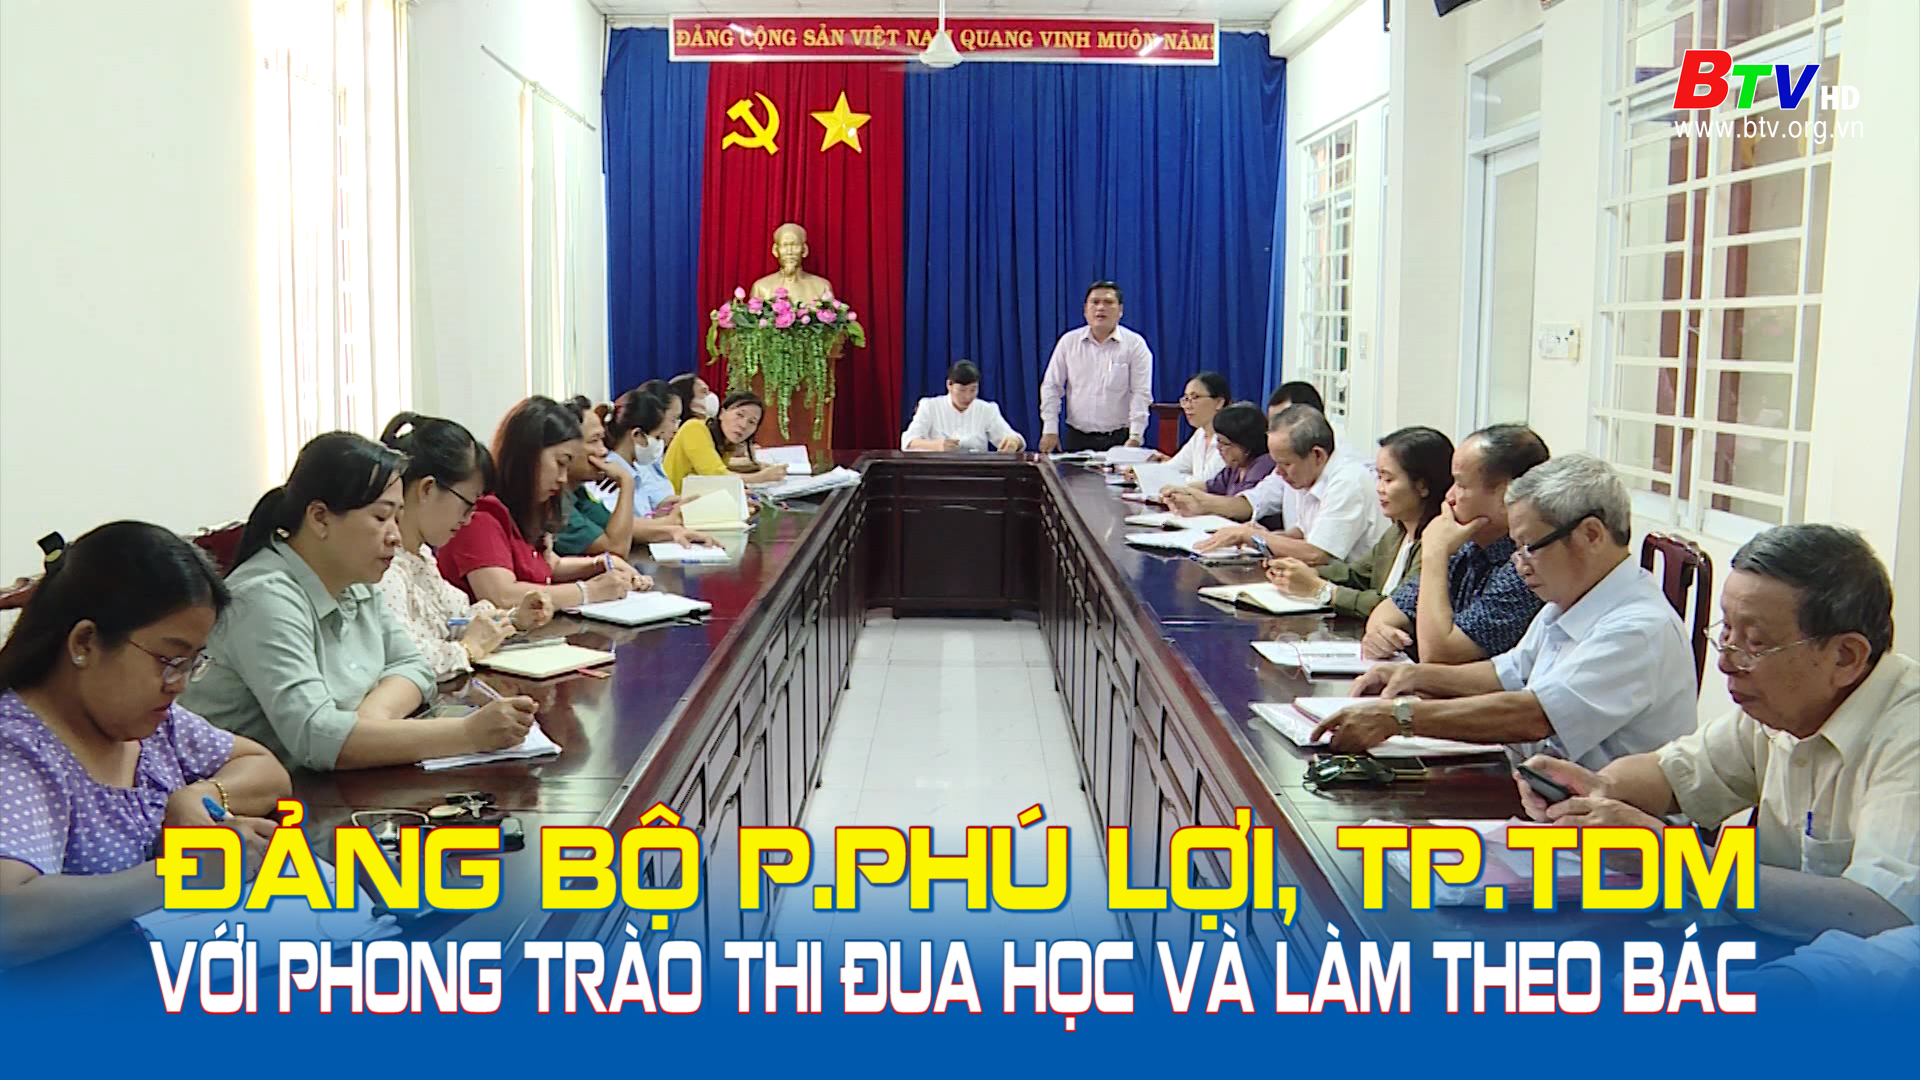 Đảng bộ phường Phú Lợi, TP.TDM với phong trào thi đua học và làm theo Bác